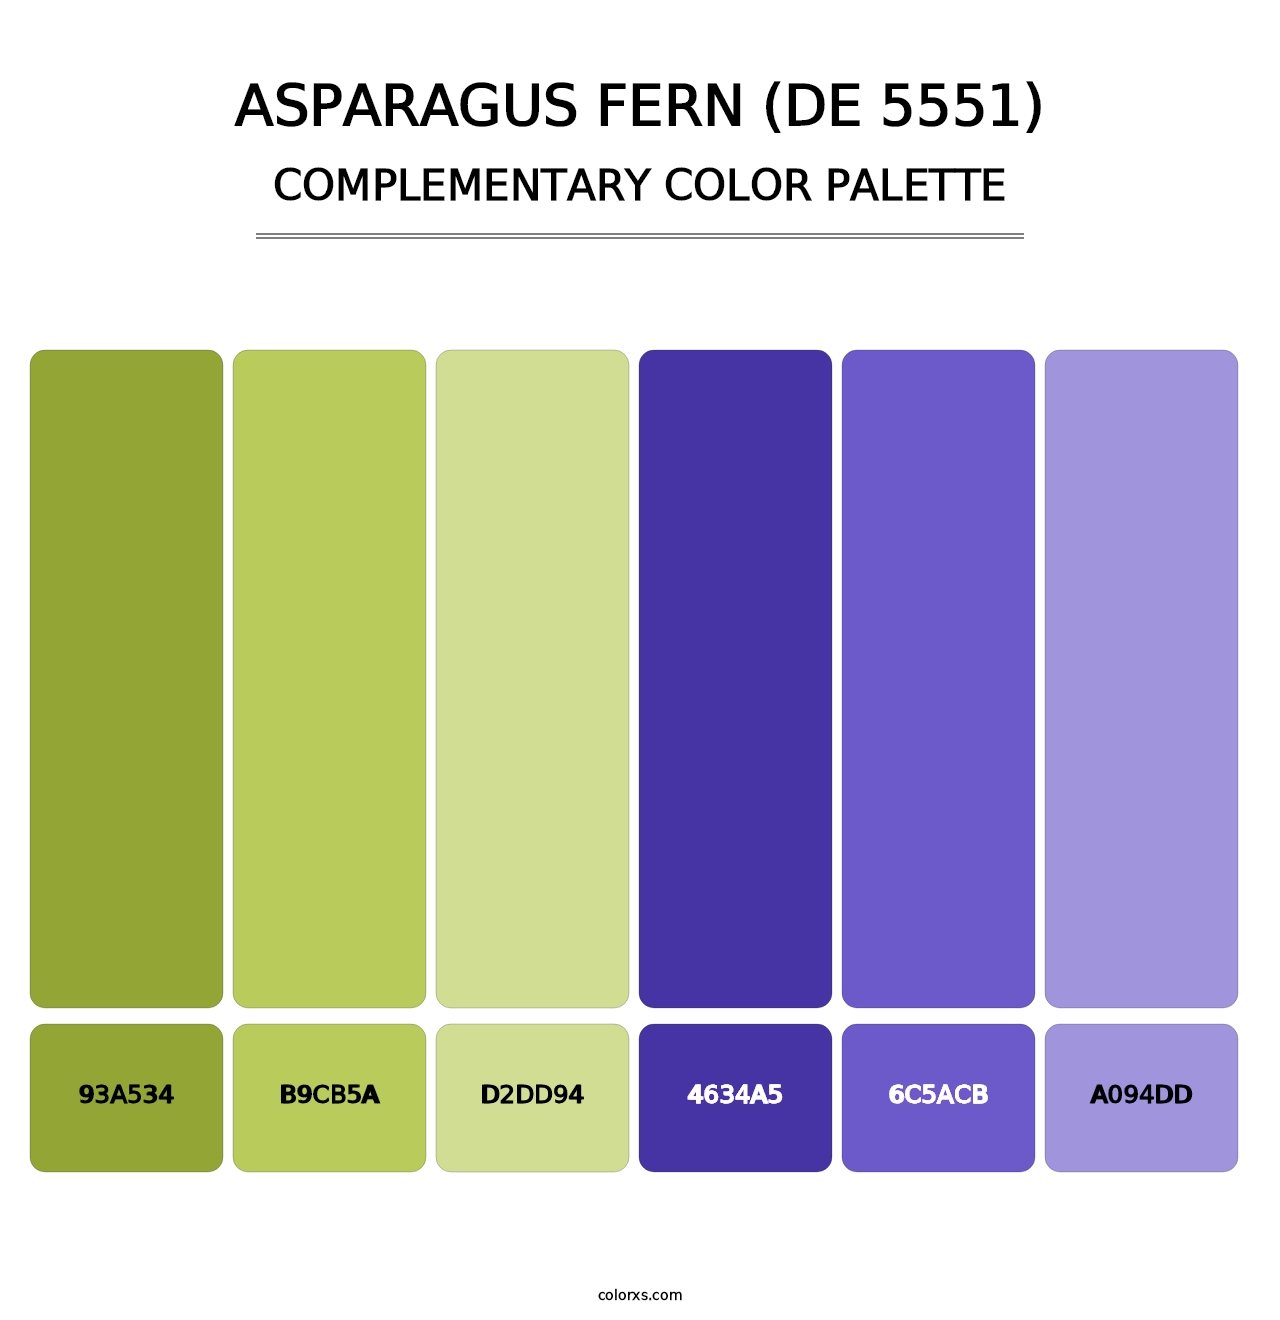 Asparagus Fern (DE 5551) - Complementary Color Palette